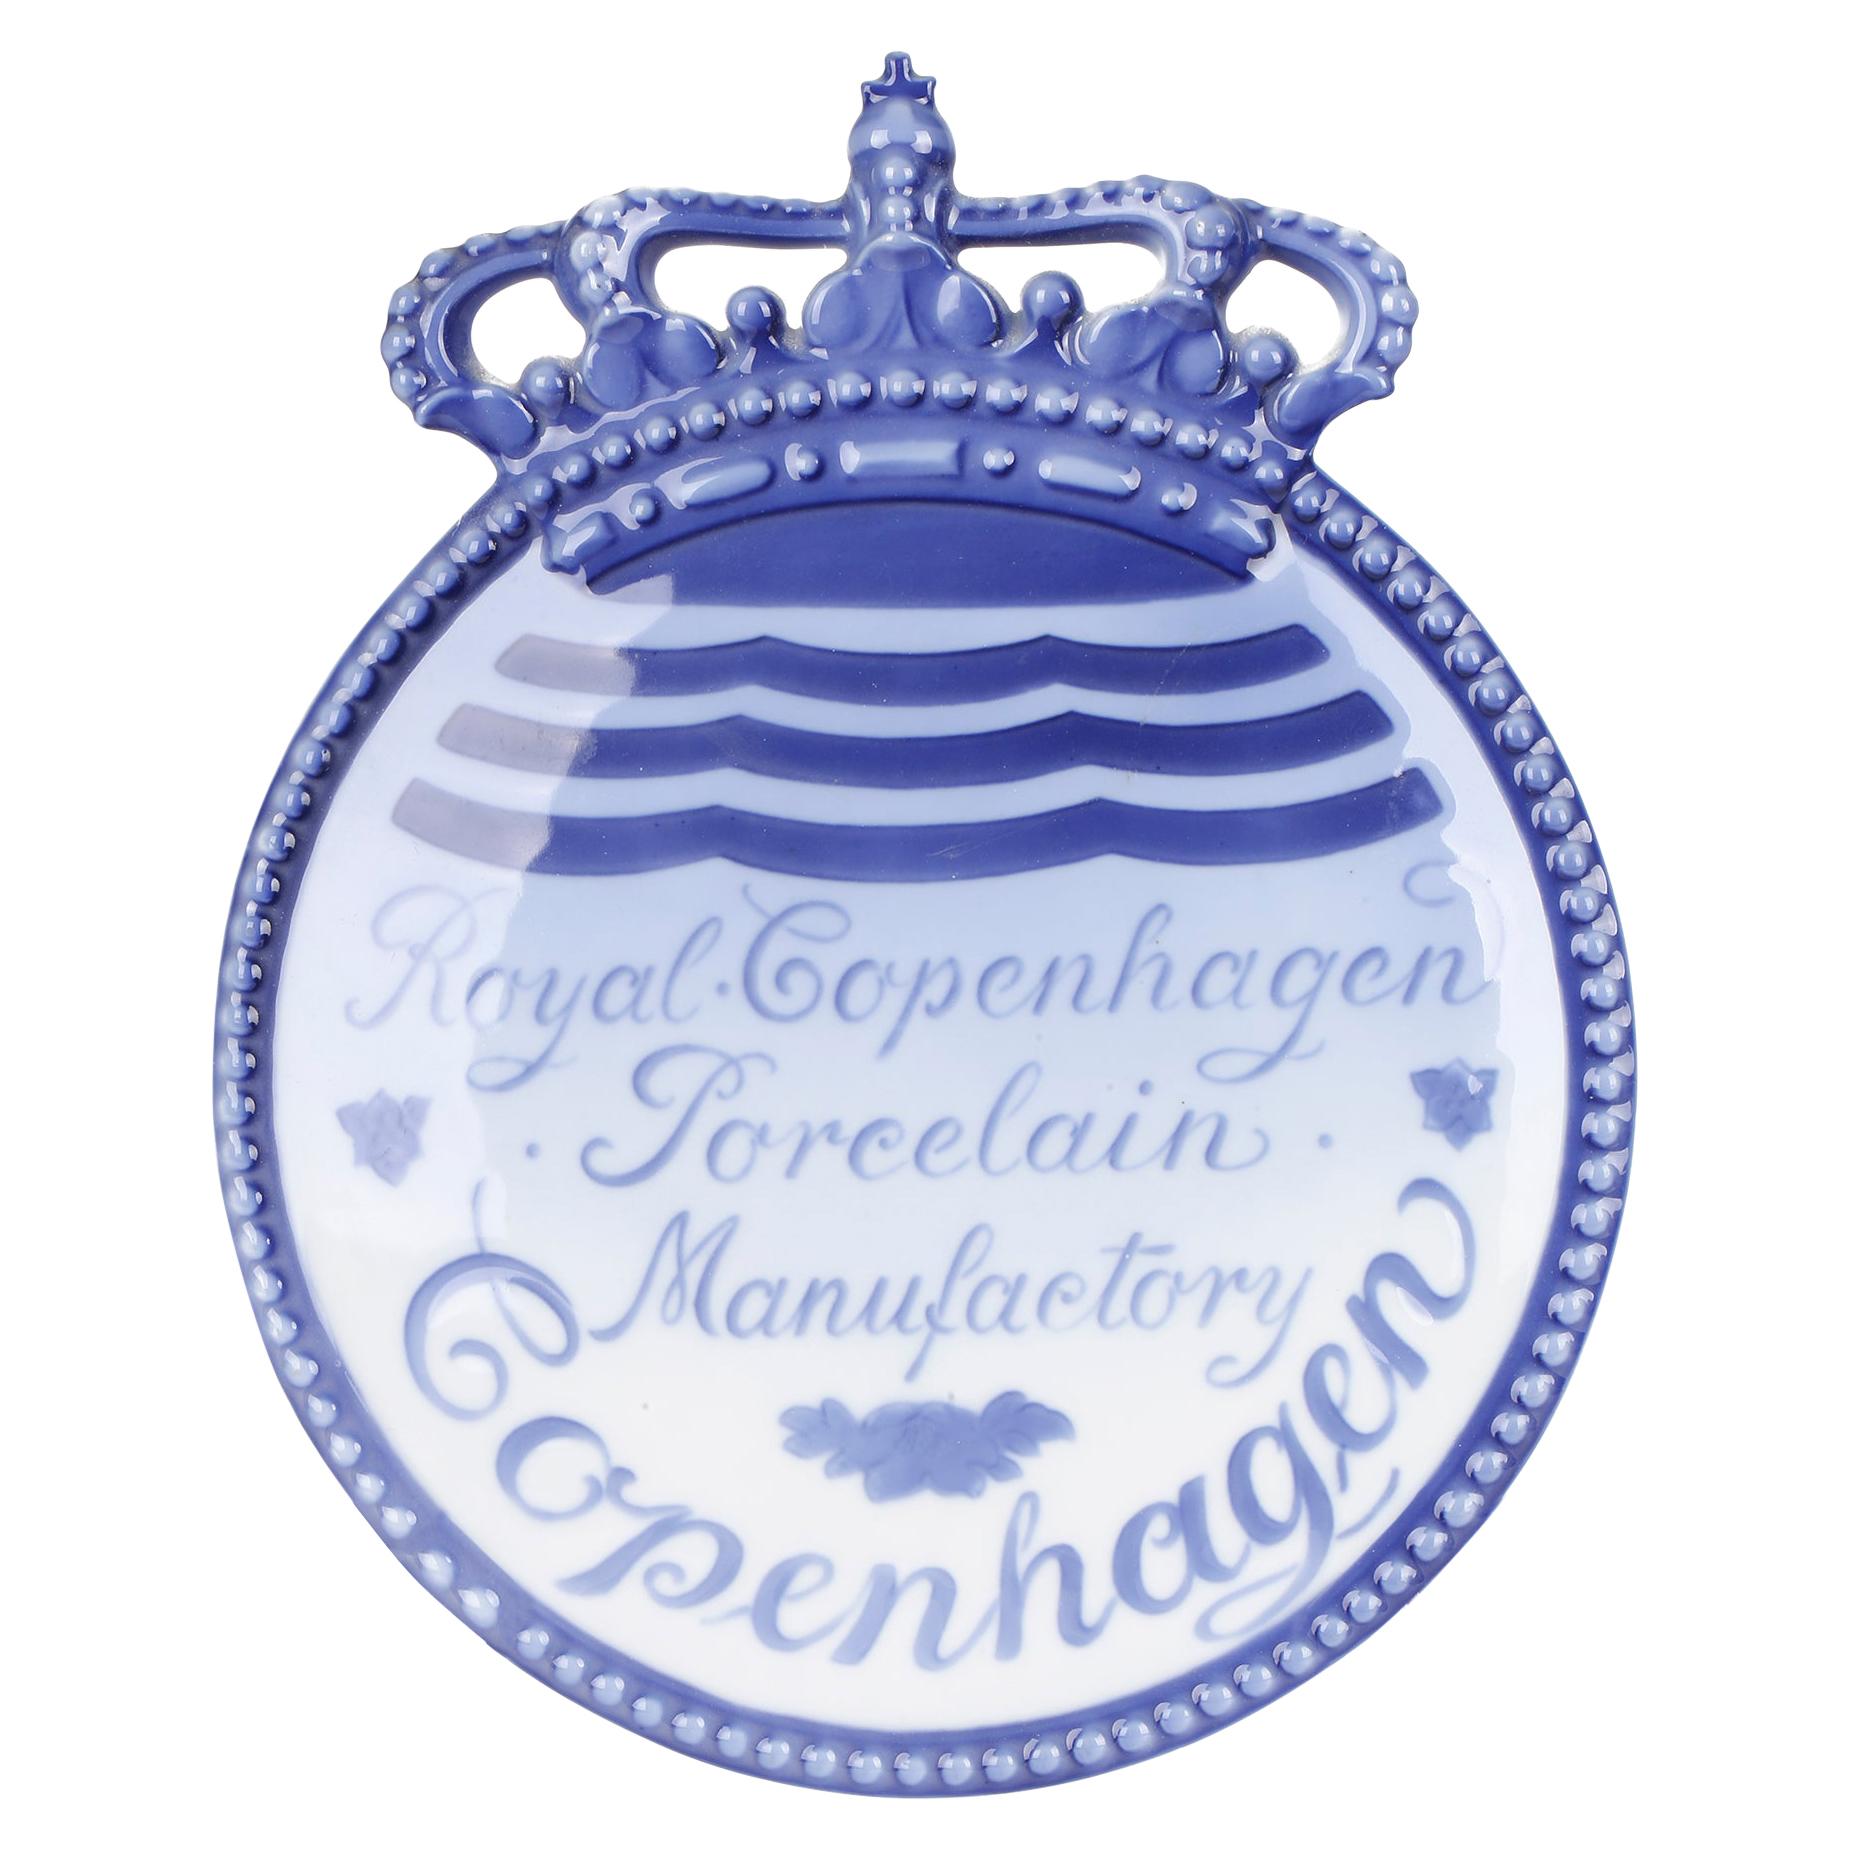 Royal Copenhagen Porcelain Manufactory Advertising Plaque